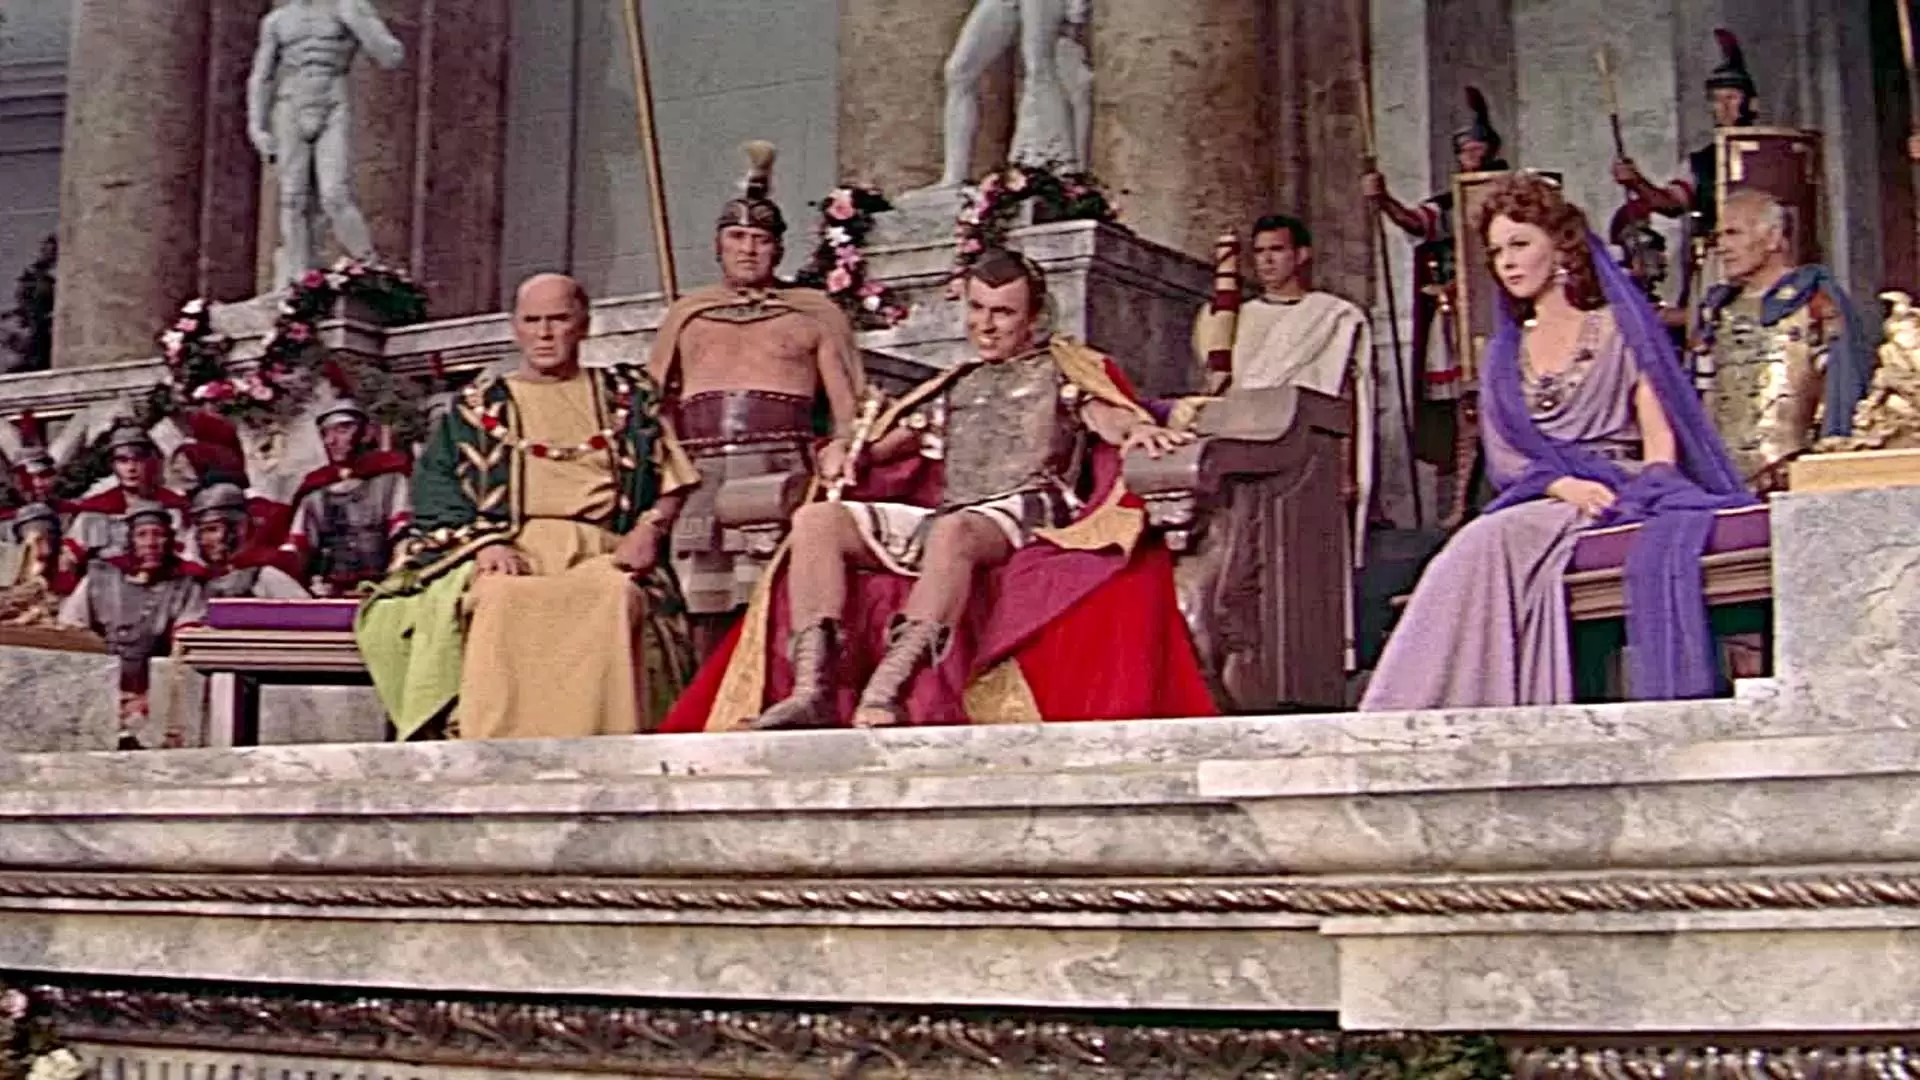 دانلود فیلم Demetrius and the Gladiators 1954